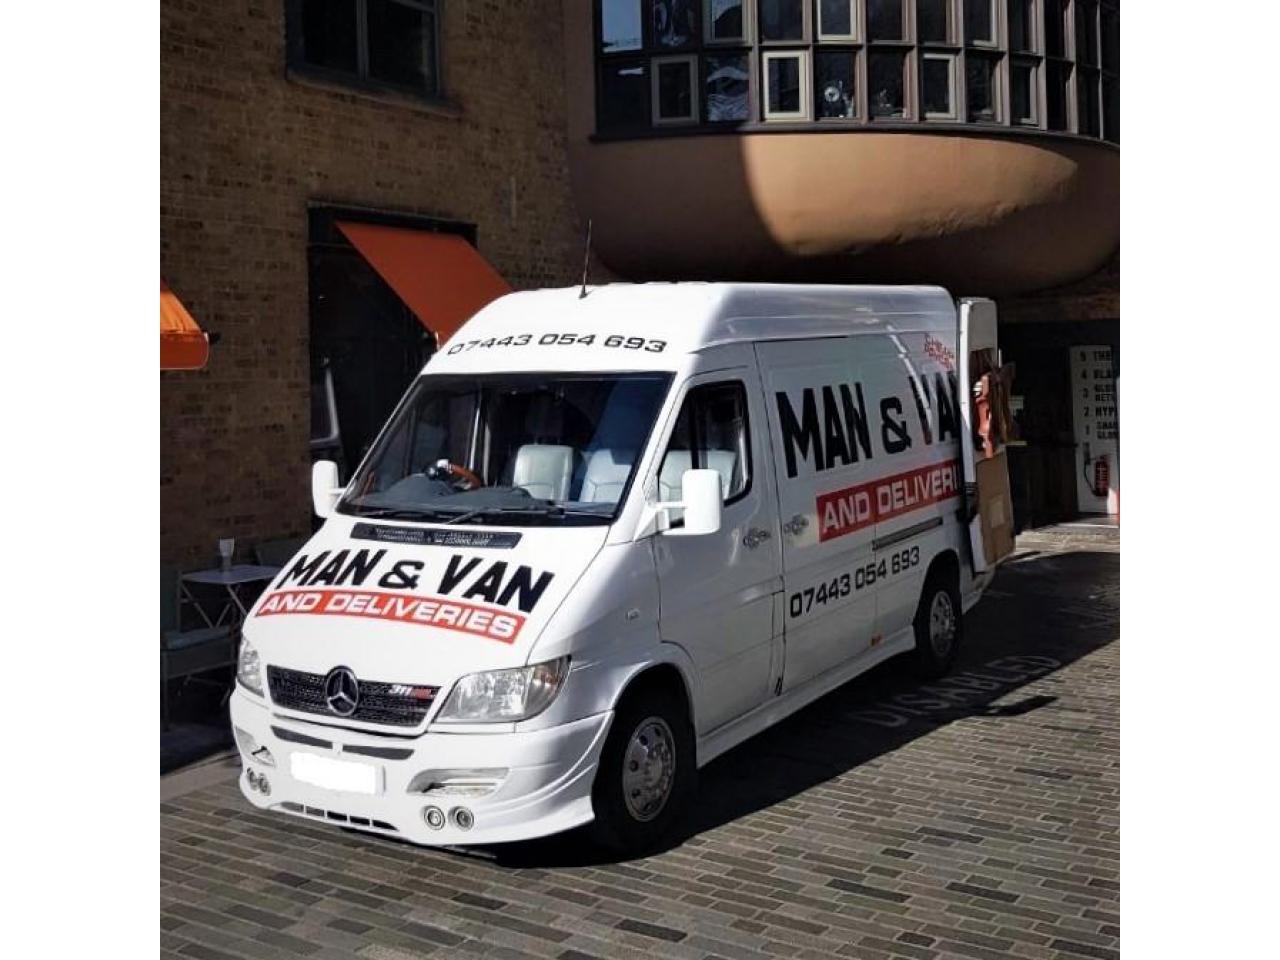 Man and Van in London - Переезды, перевозки, доставка любых грузов и товаров - от £30 - 3